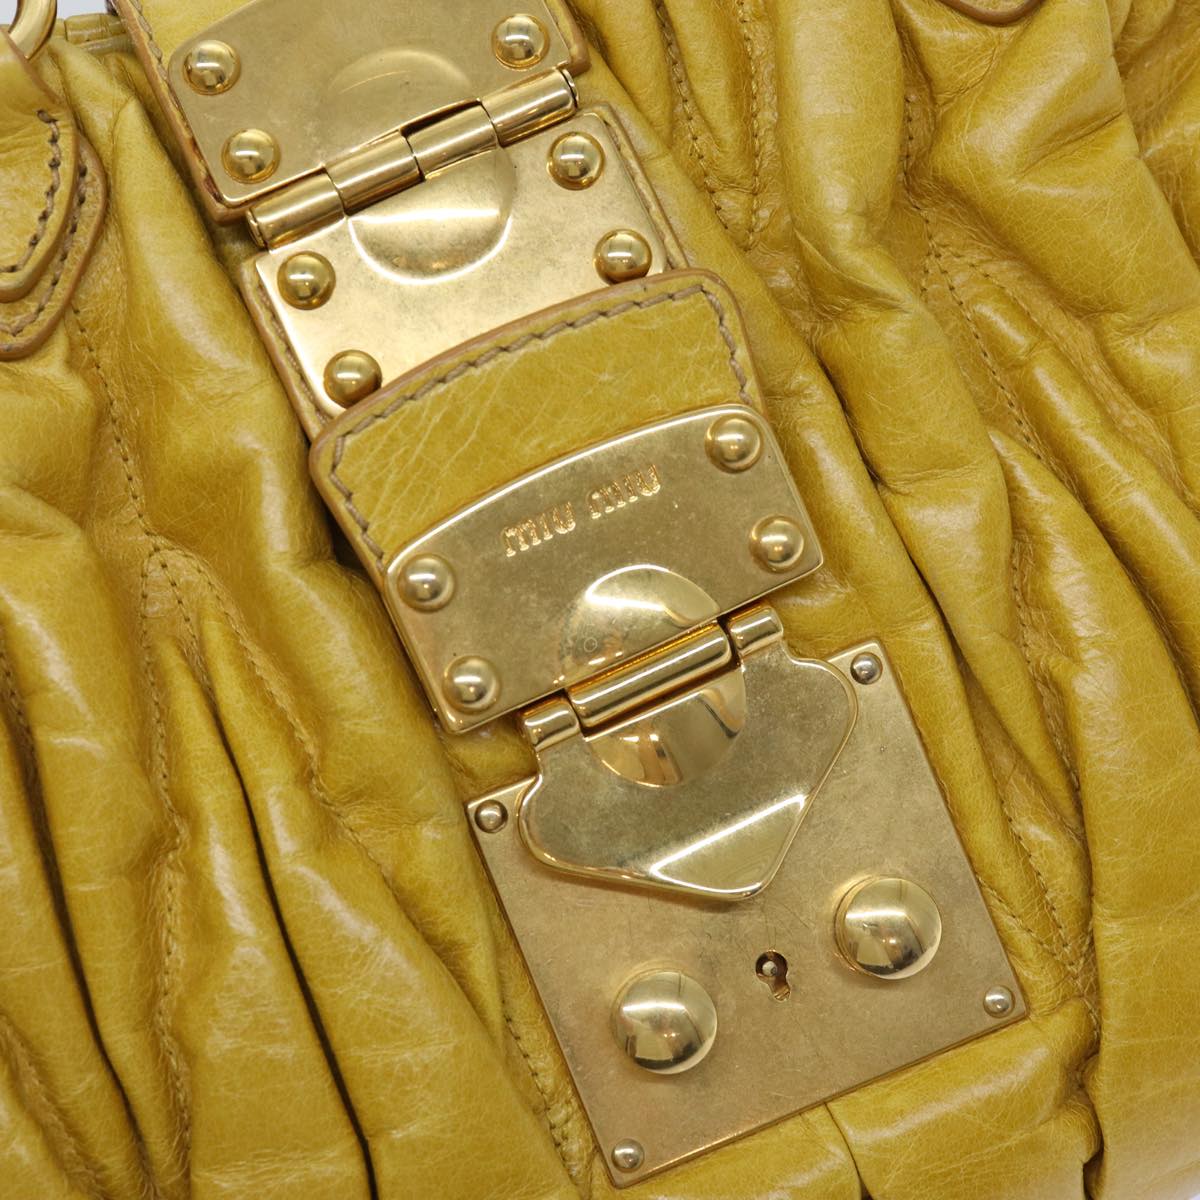 Miu Miu Matelasse Hand Bag Leather 2way Brown Auth bs14859